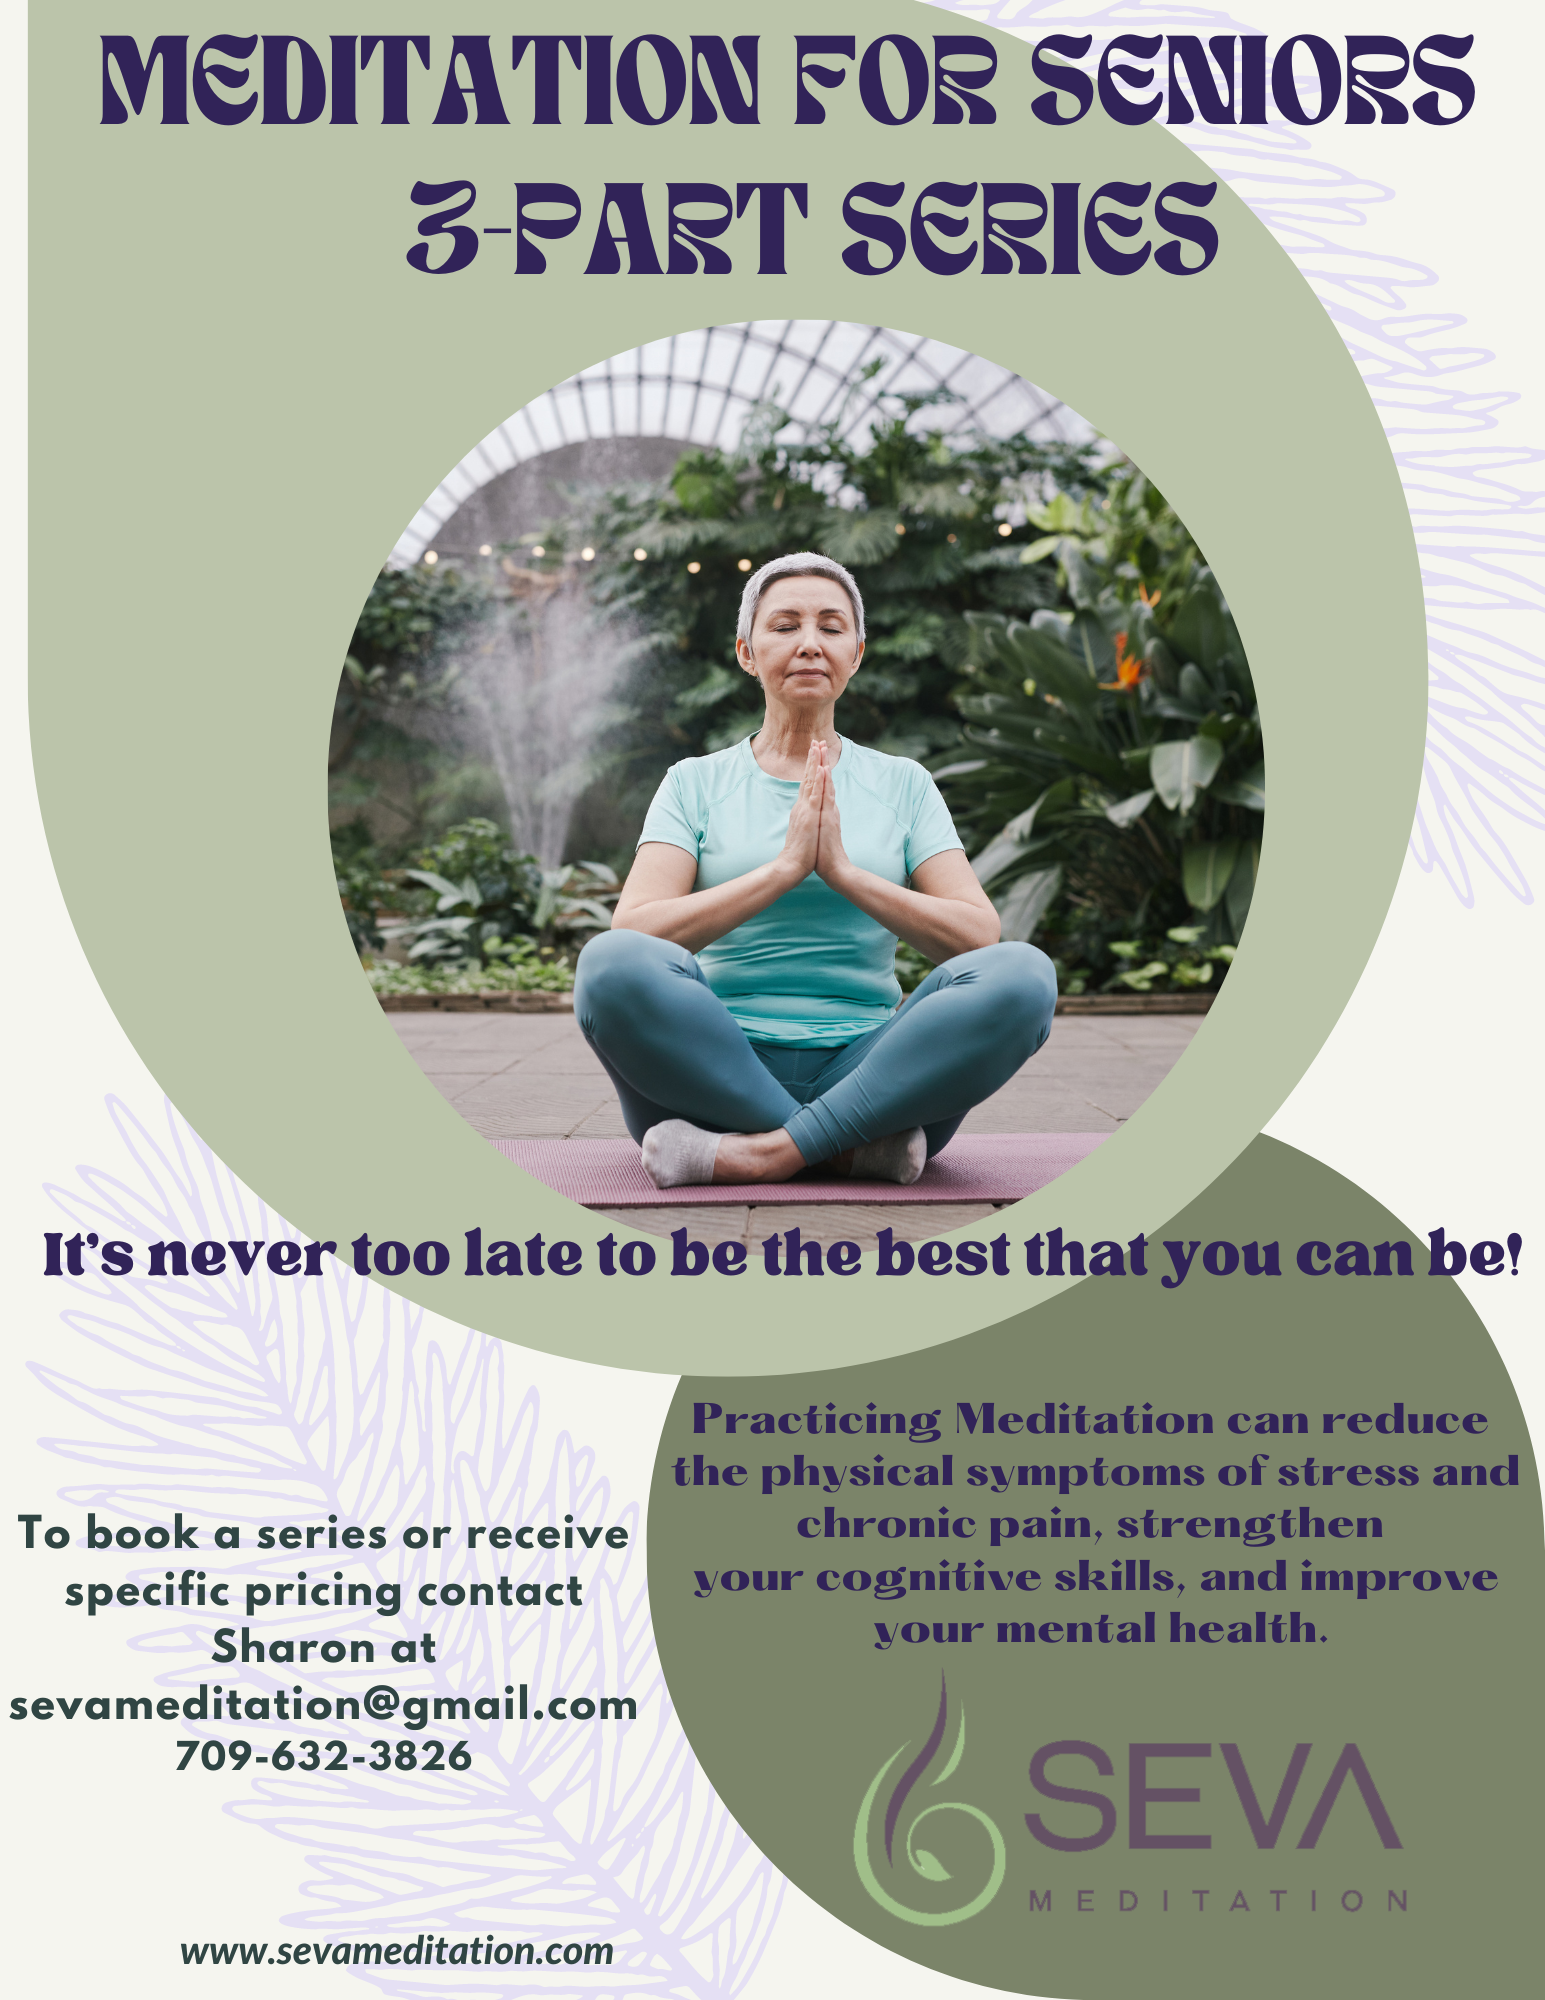 Meditation Series For Seniors